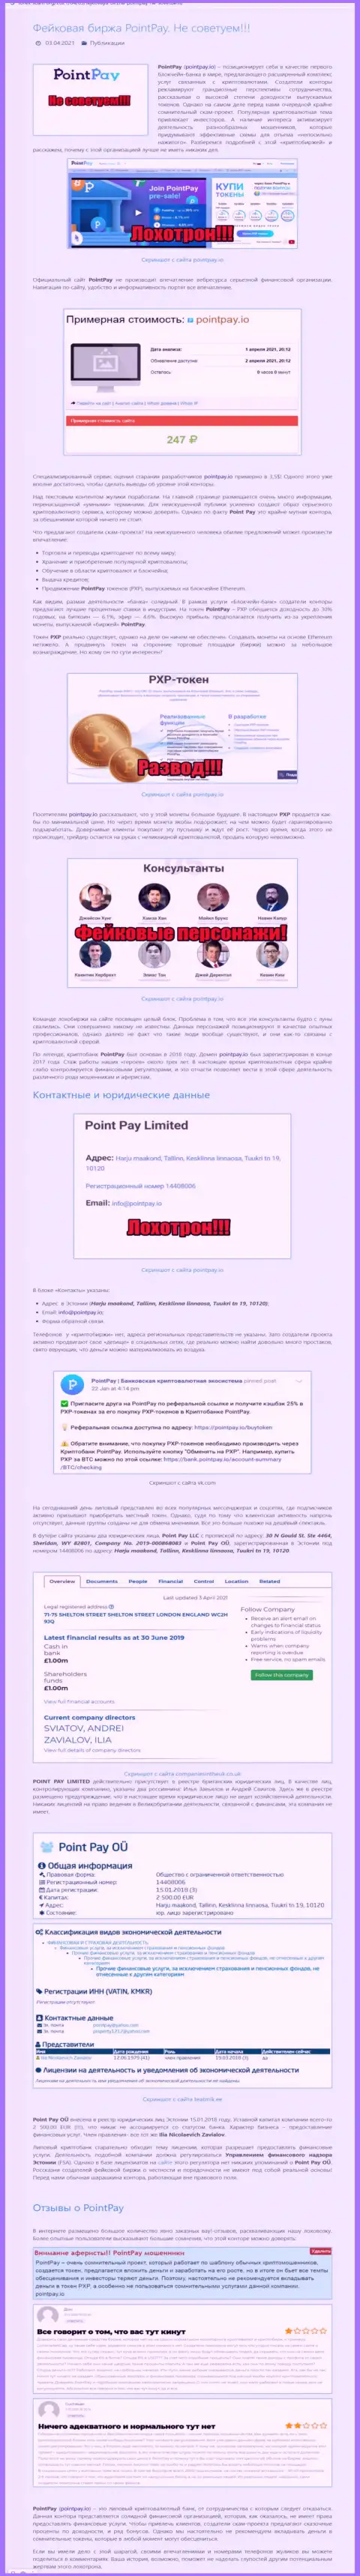 PointPay Io разводят и вложенные деньги собственным клиентам не возвращают - обзор мошеннических уловок организации